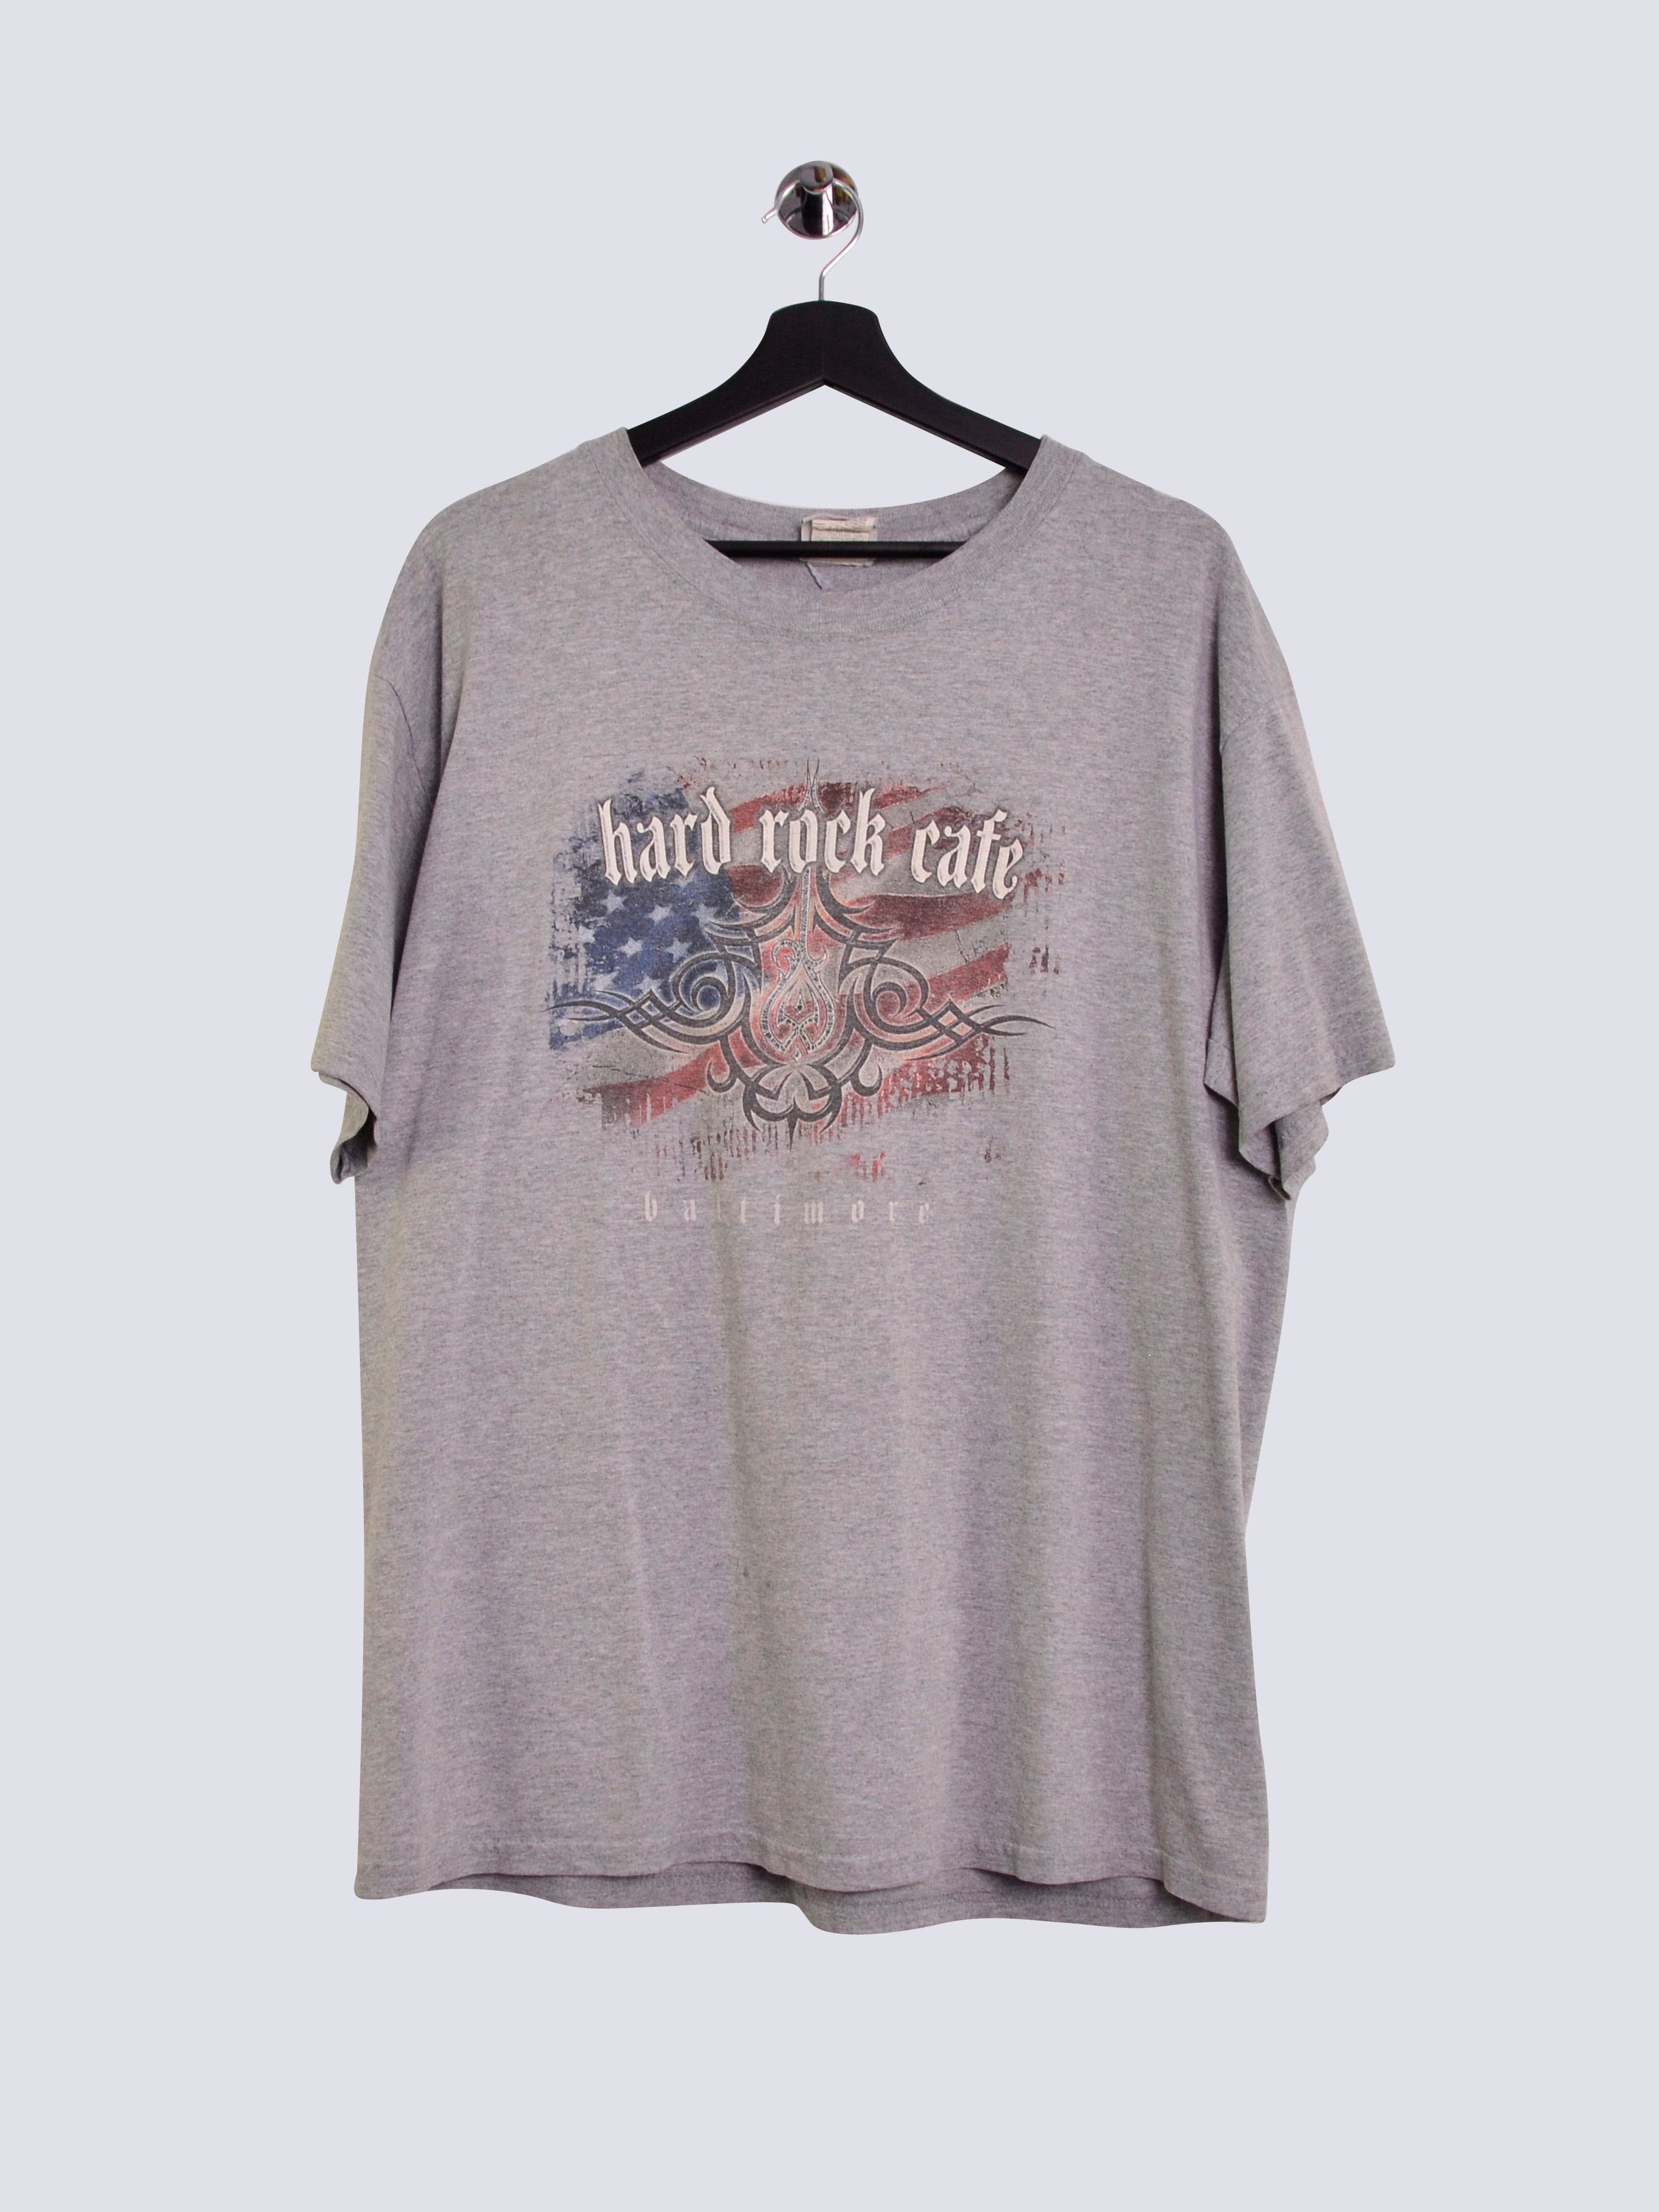 Hard Rock Cafe Baltimore Shirt Grey // Large - RHAGHOUSE VINTAGE